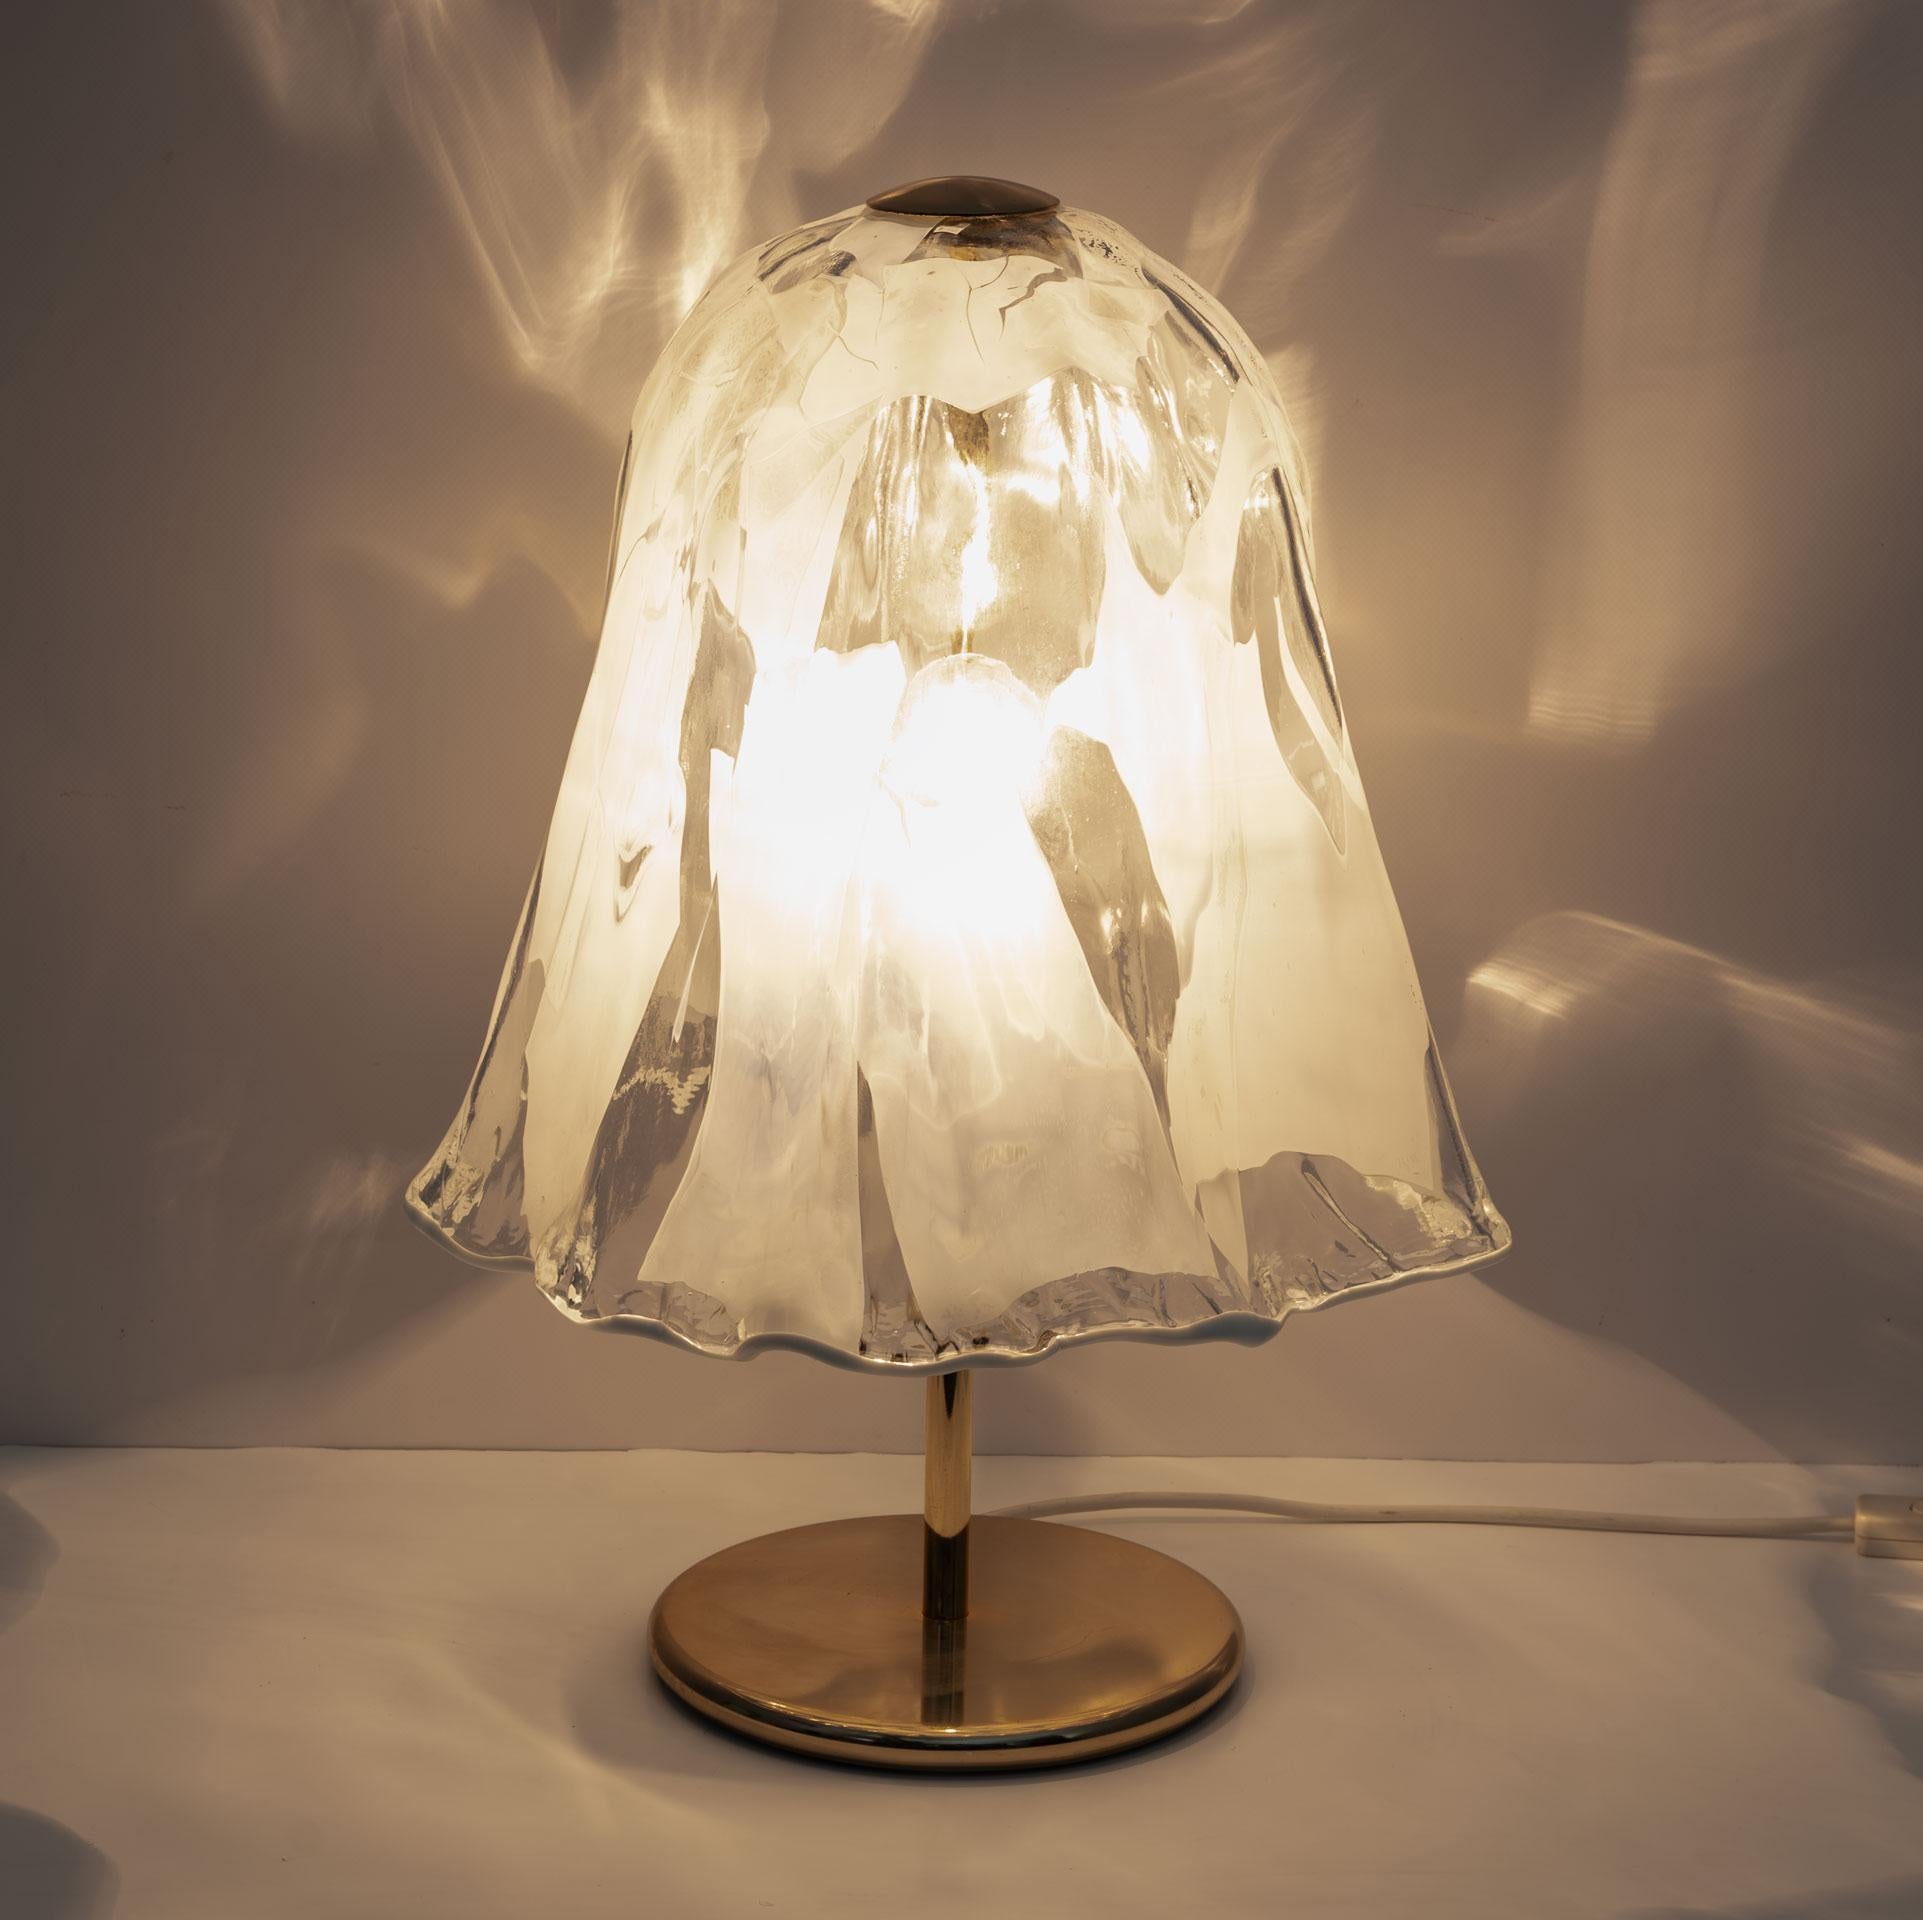 Lampe de table de la célèbre La murrina, réalisée dans la période artistique des années 70. L'ombre de cette lumière ressemble gracieusement à une fleur en forme de cloche. C'est tellement gentil.

Cette lampe ne se contente pas d'éclairer, elle